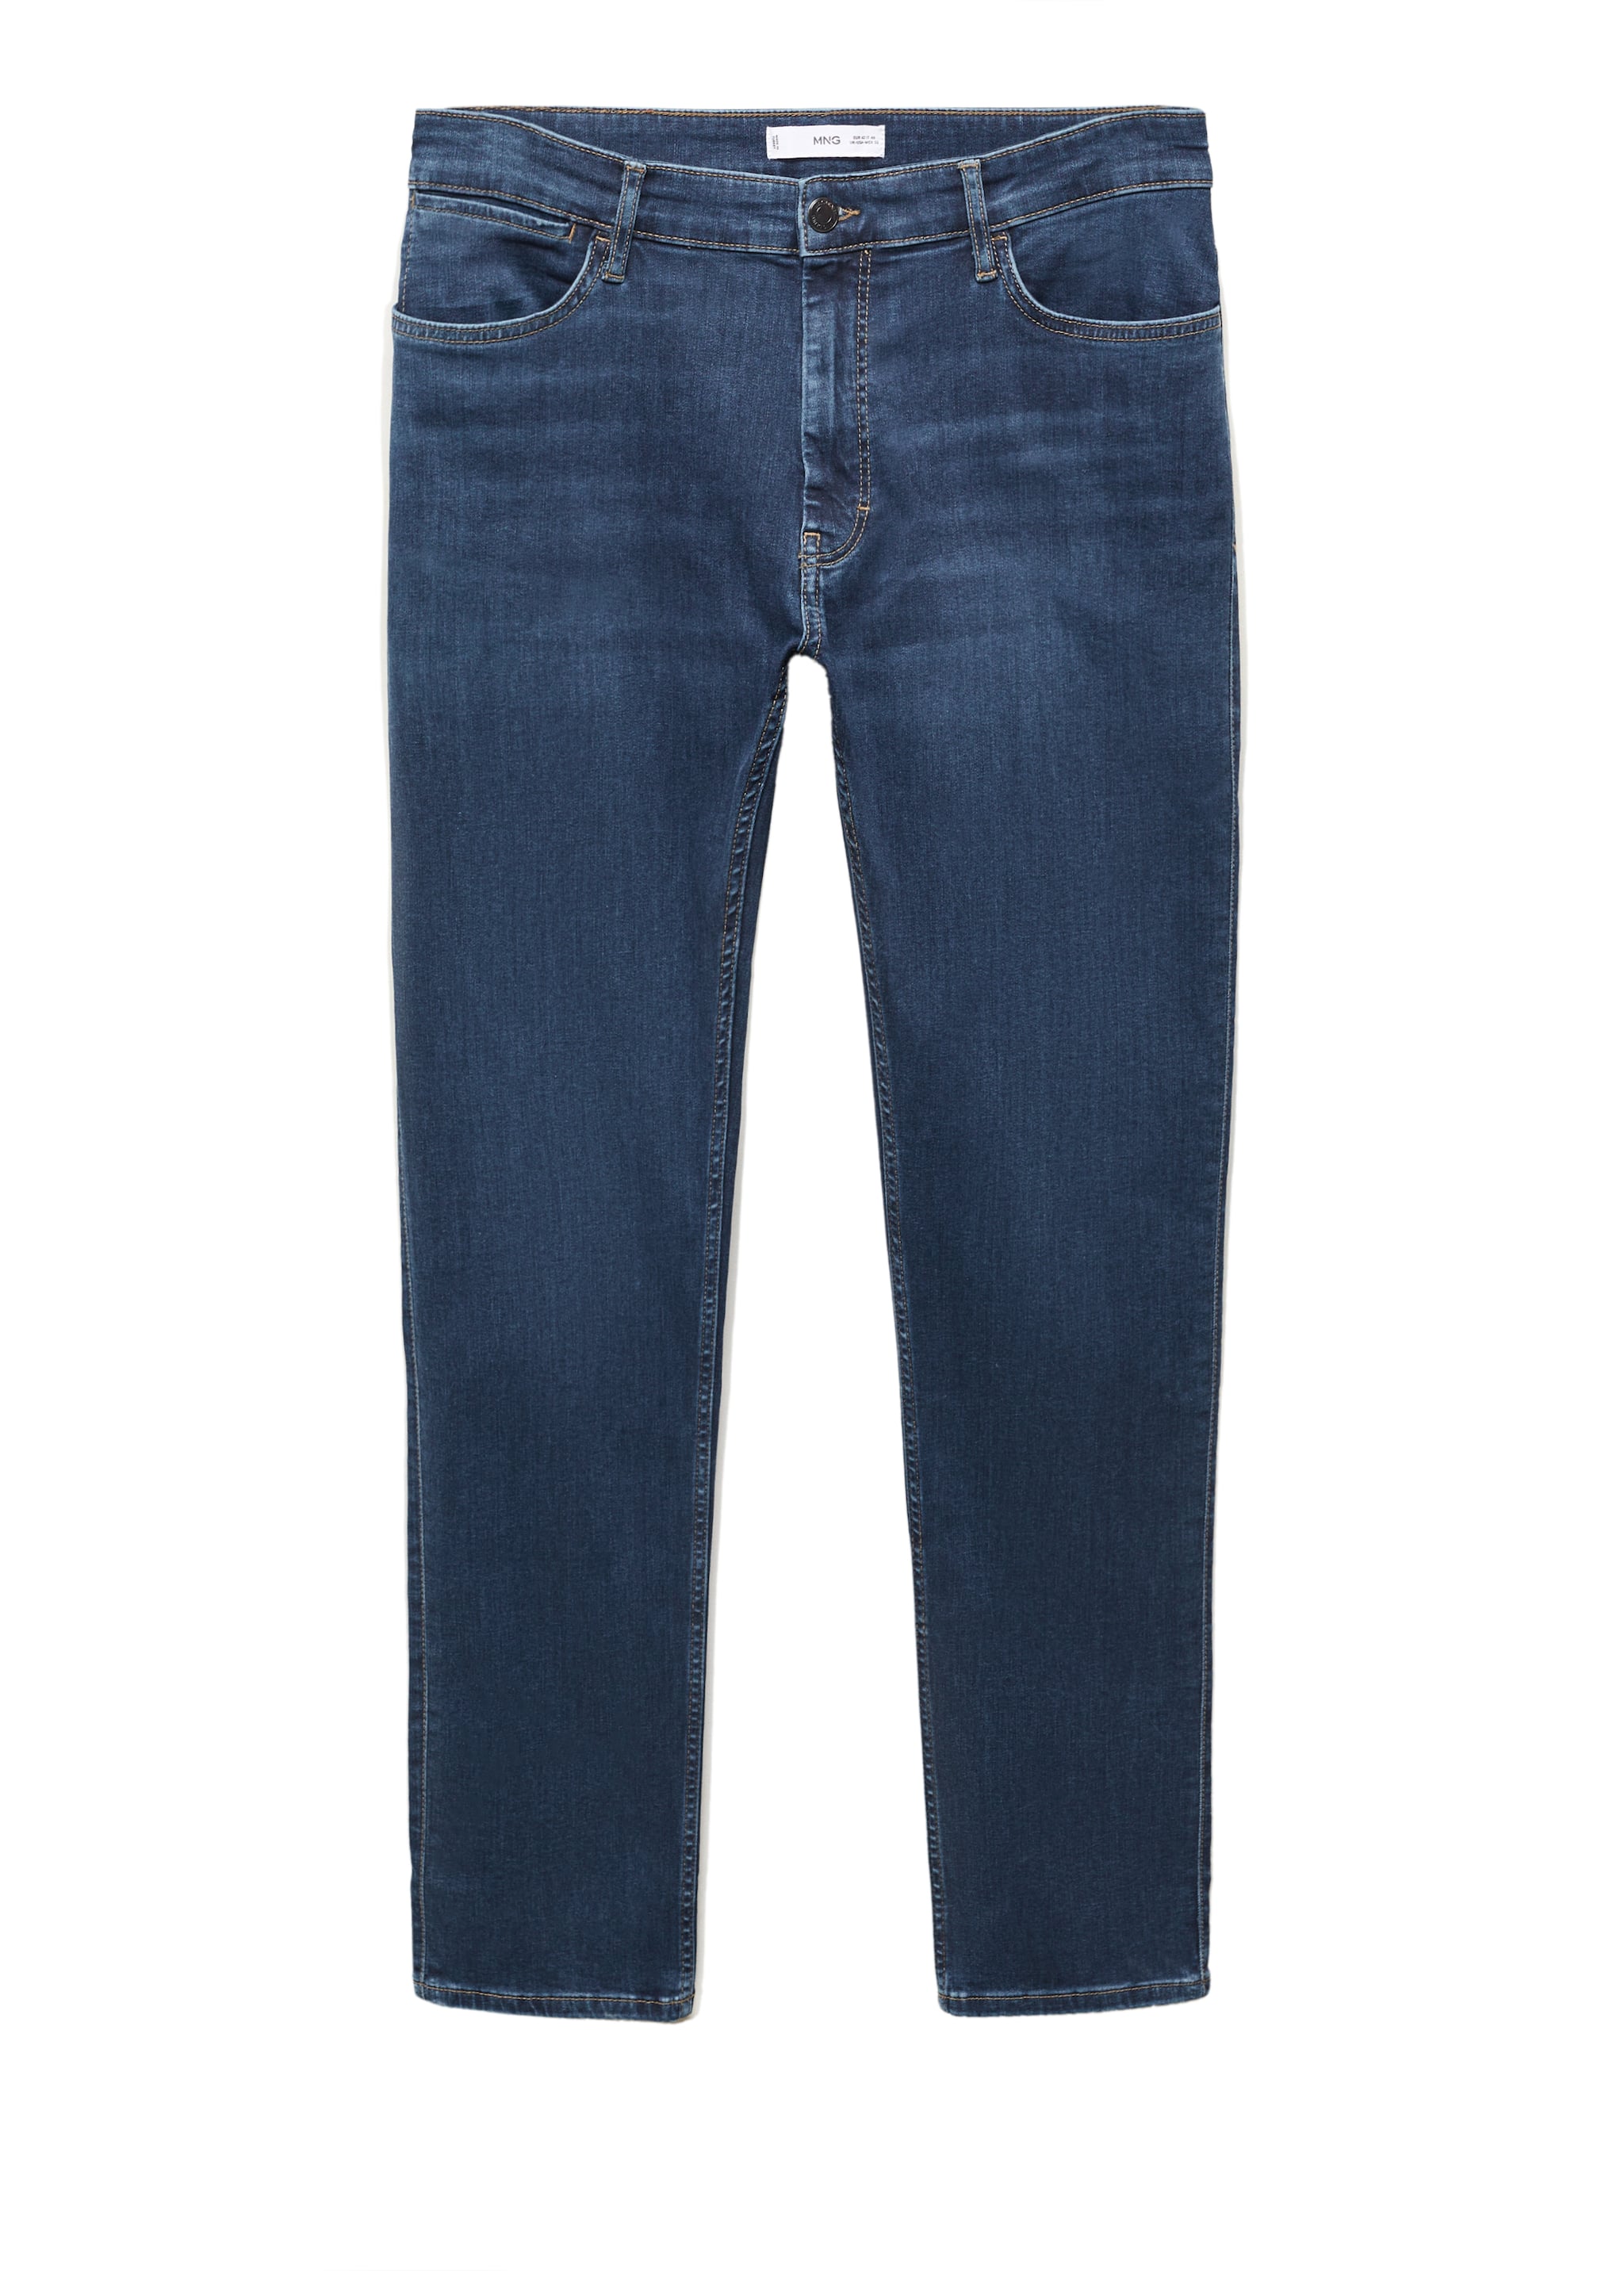 Jeans Patrick slim fit Ultra Soft Touch - Pormenor do artigo 9